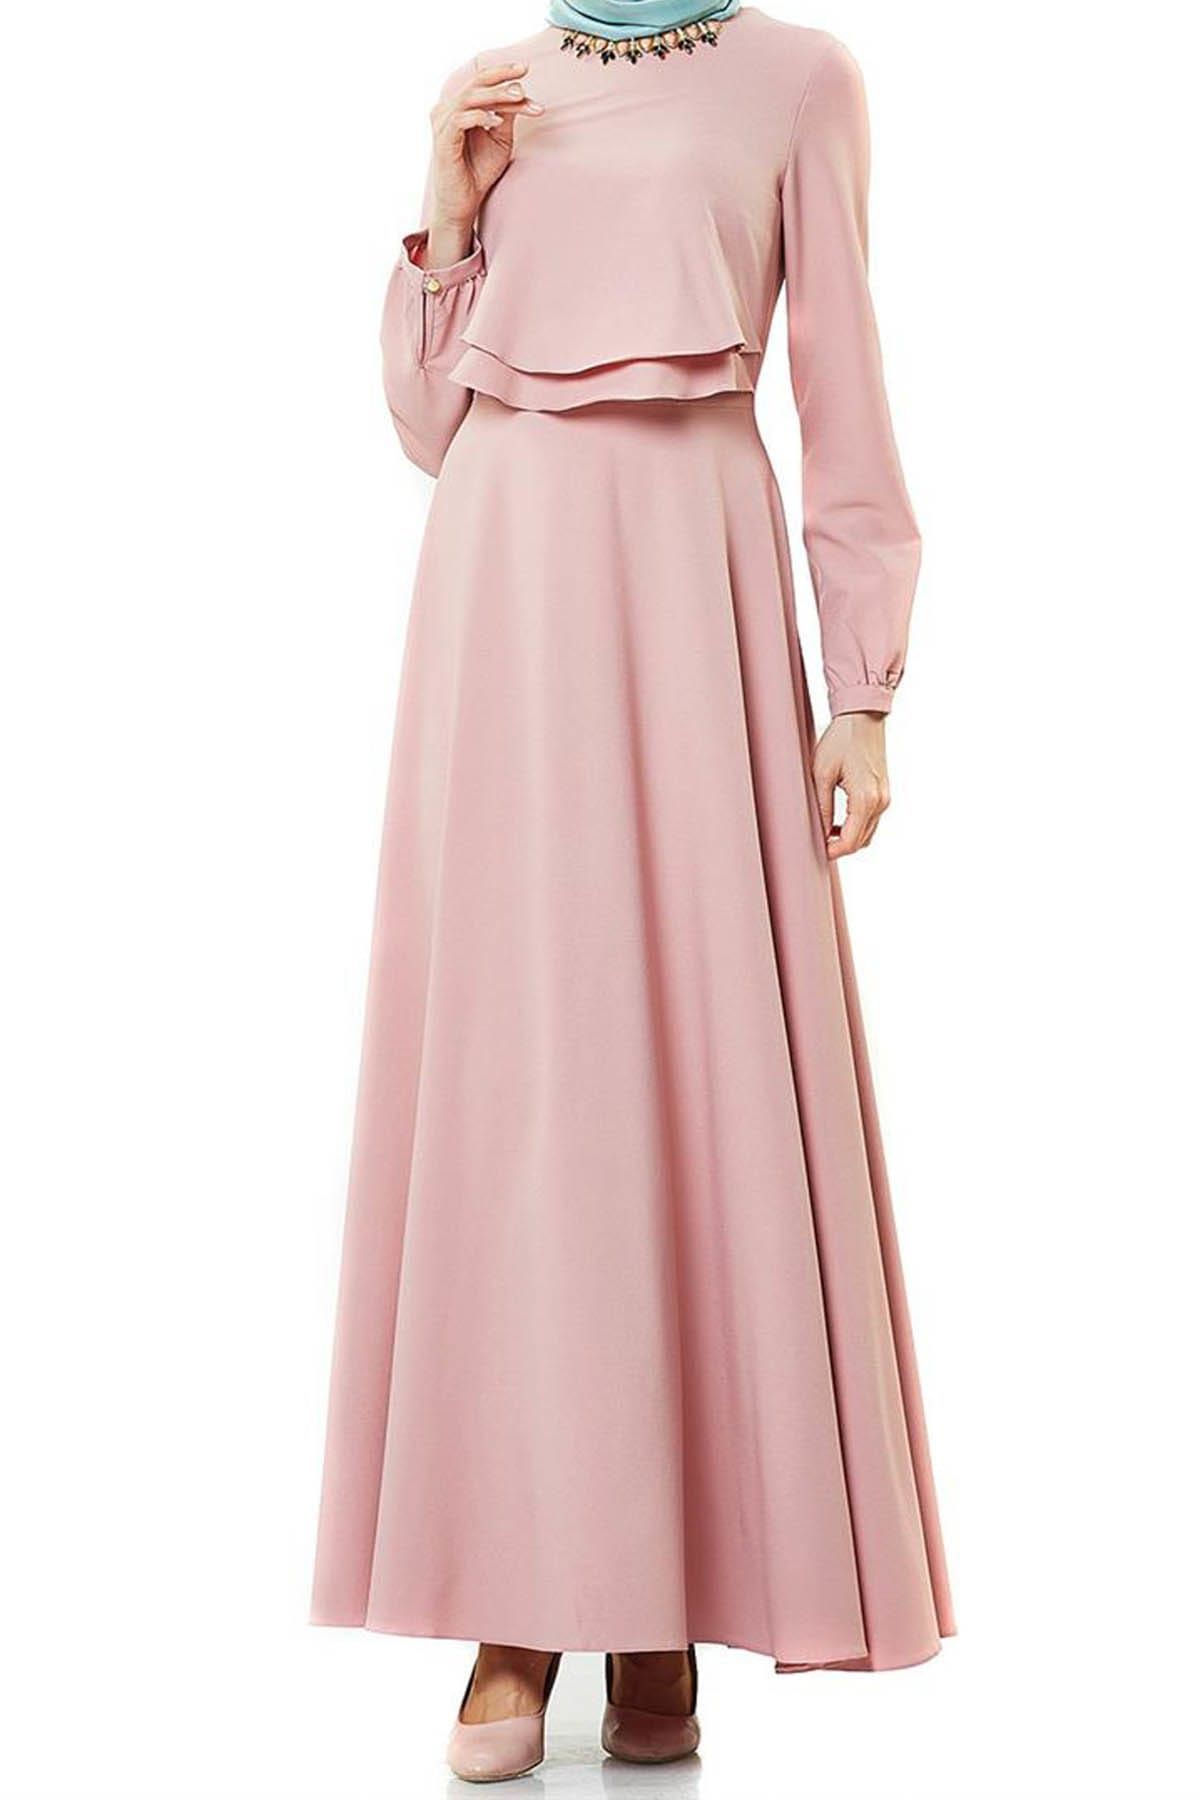 2NIQ Kadın Kloş Abiye Elbise Pudra PN8079-41